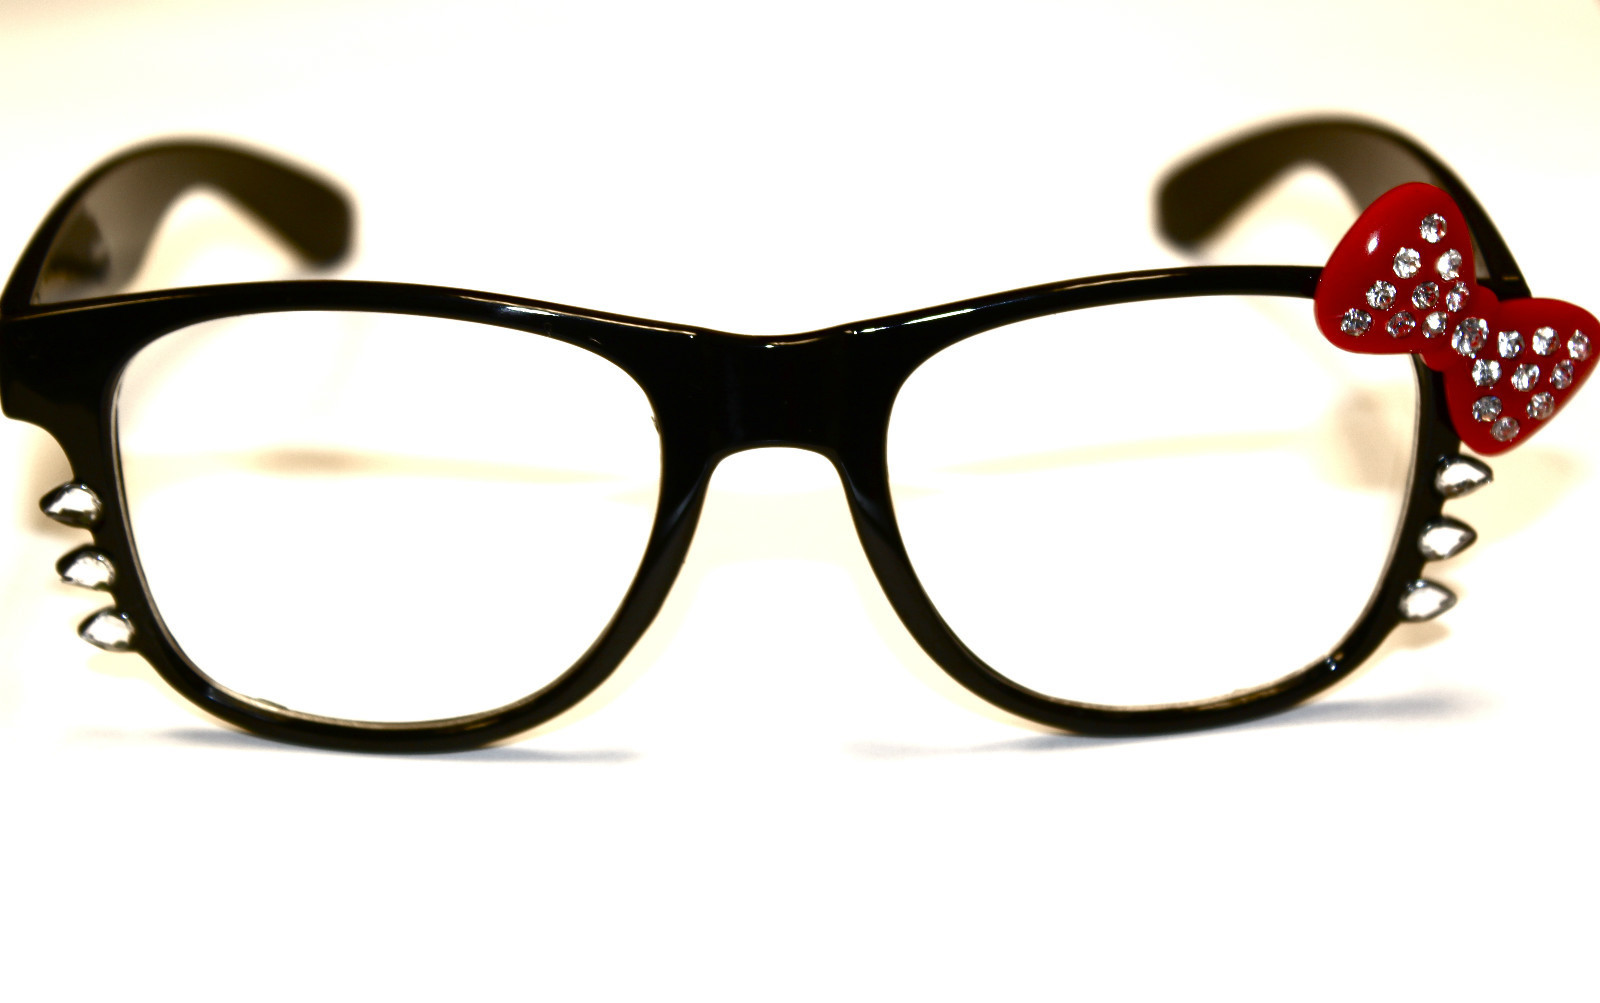 Eyeglasses clipart geeky glass. Geek glasses nerd black